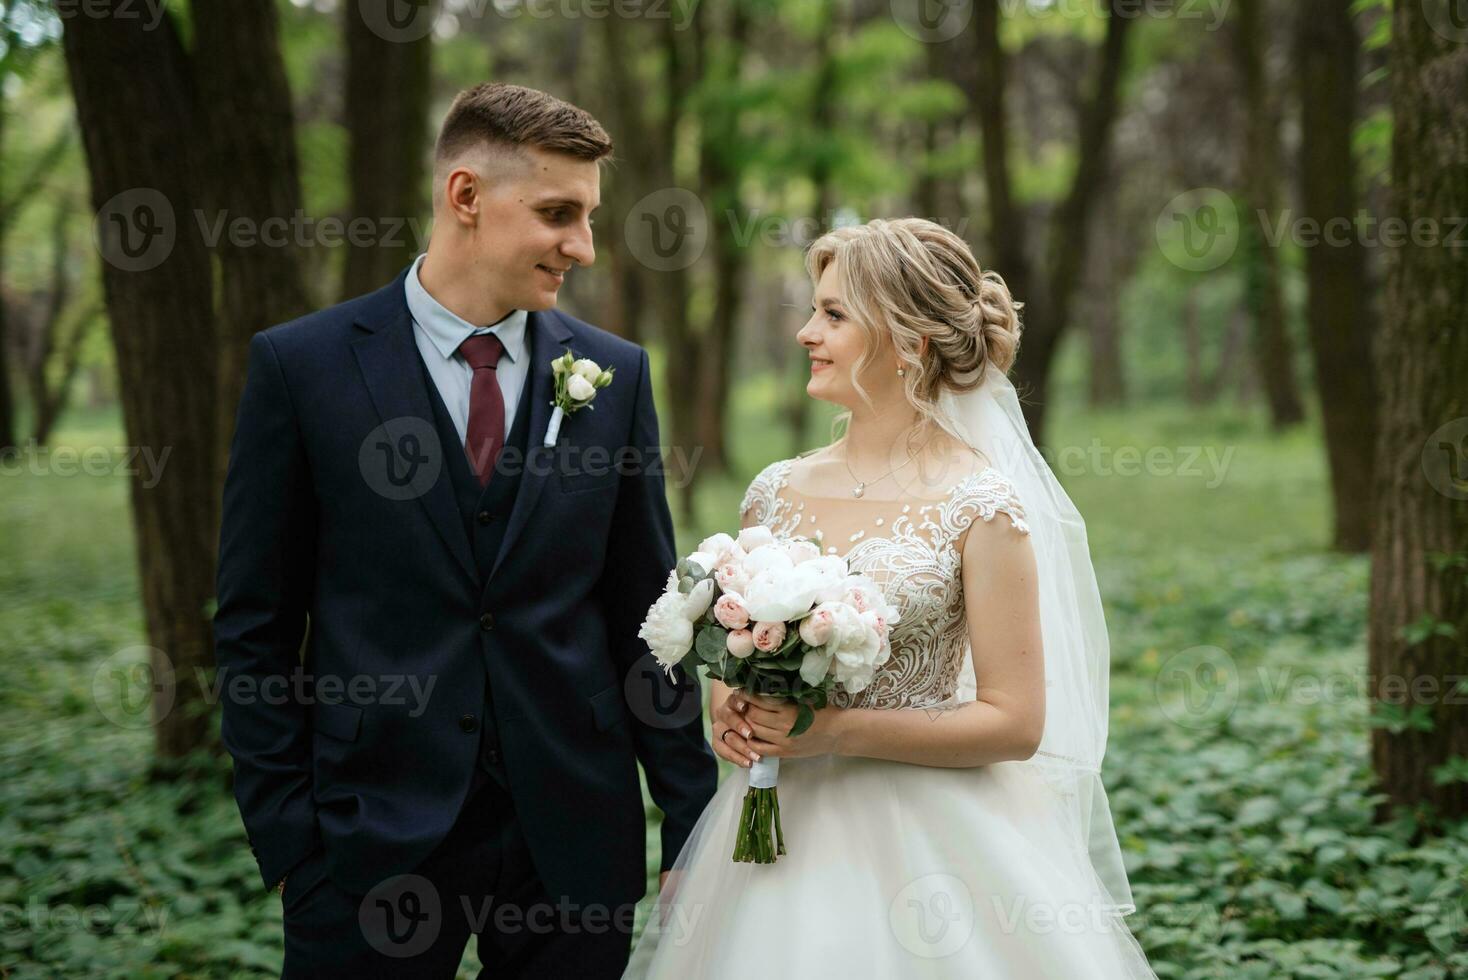 le jeune marié et le la mariée sont en marchant dans le forêt photo